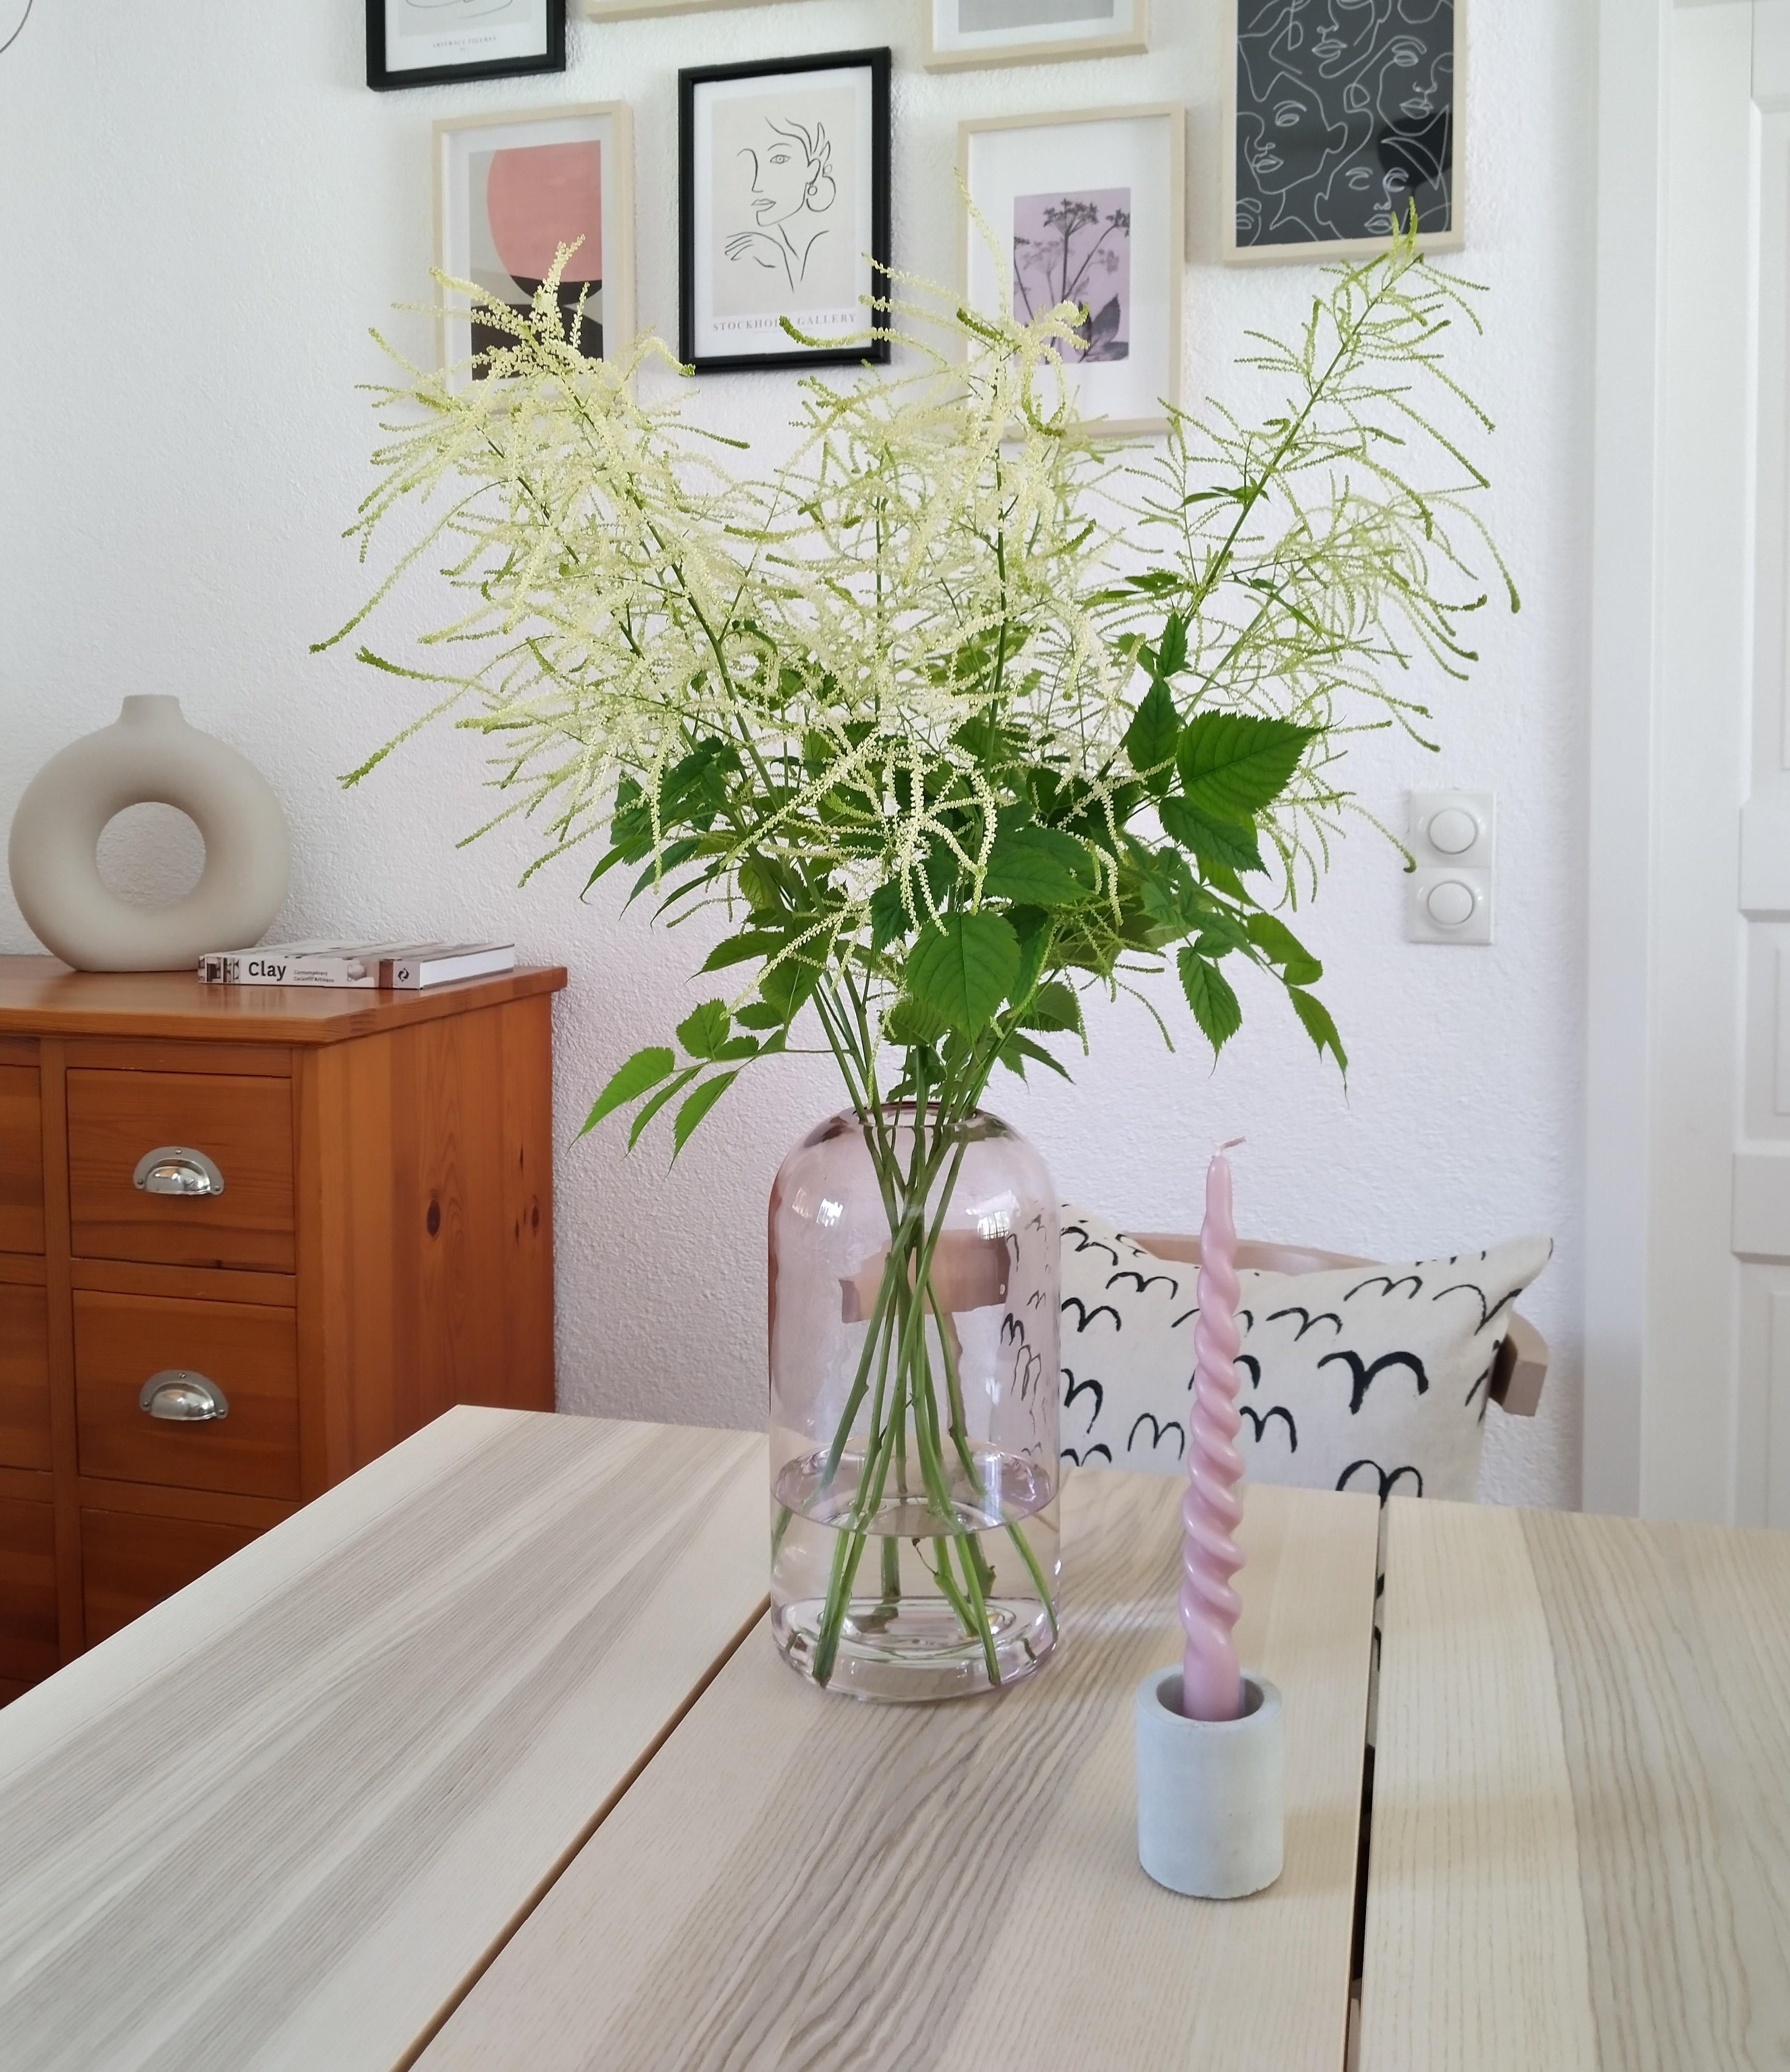 Zum #freshflowerfriday gibt's meinen geliebten Geißbart💚 ...
#esszimmer #kerze #vase #bilderwand #blumen